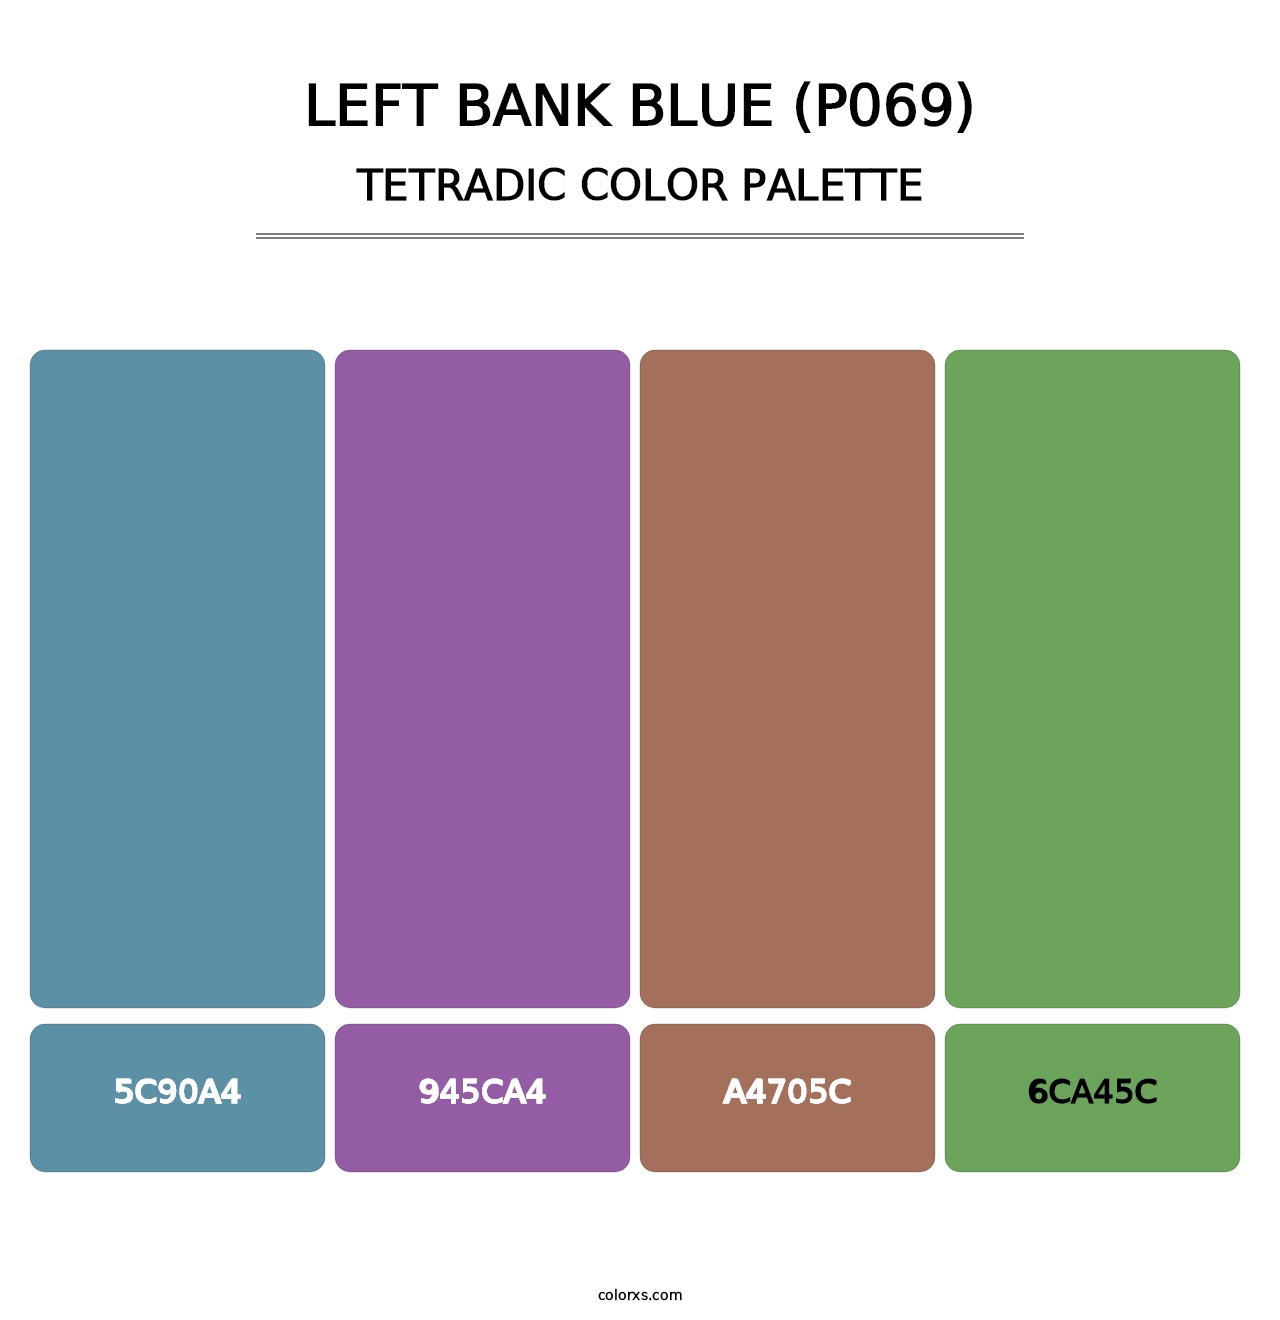 Left Bank Blue (P069) - Tetradic Color Palette